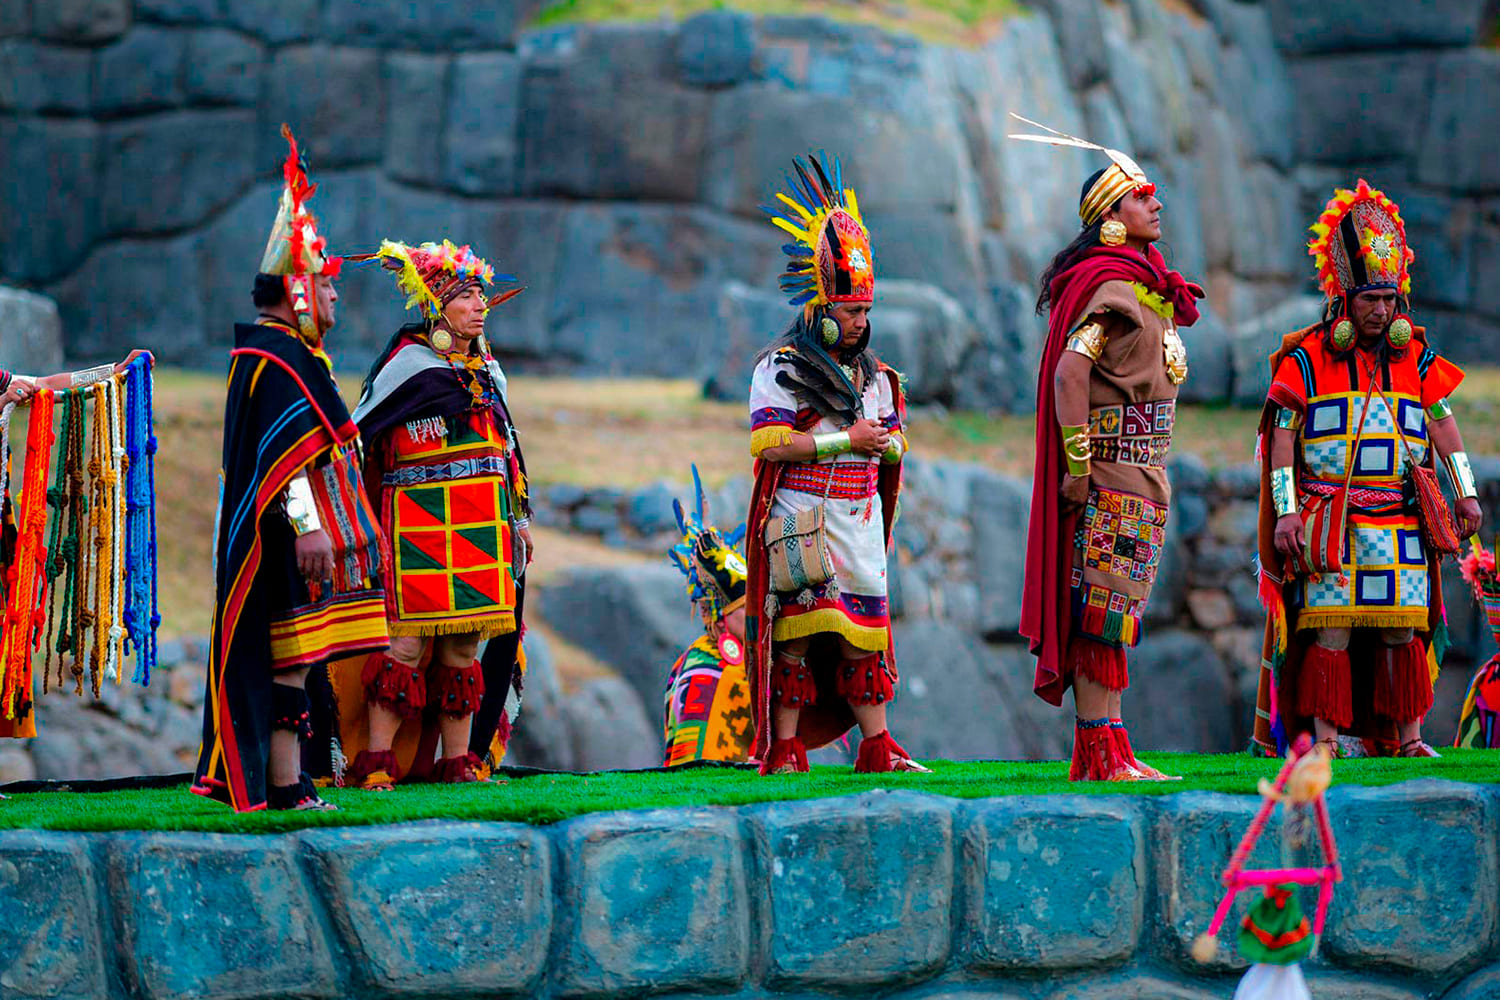 5.- CURIOSITIES OF CUSCO: THE INCA STILL LIVE